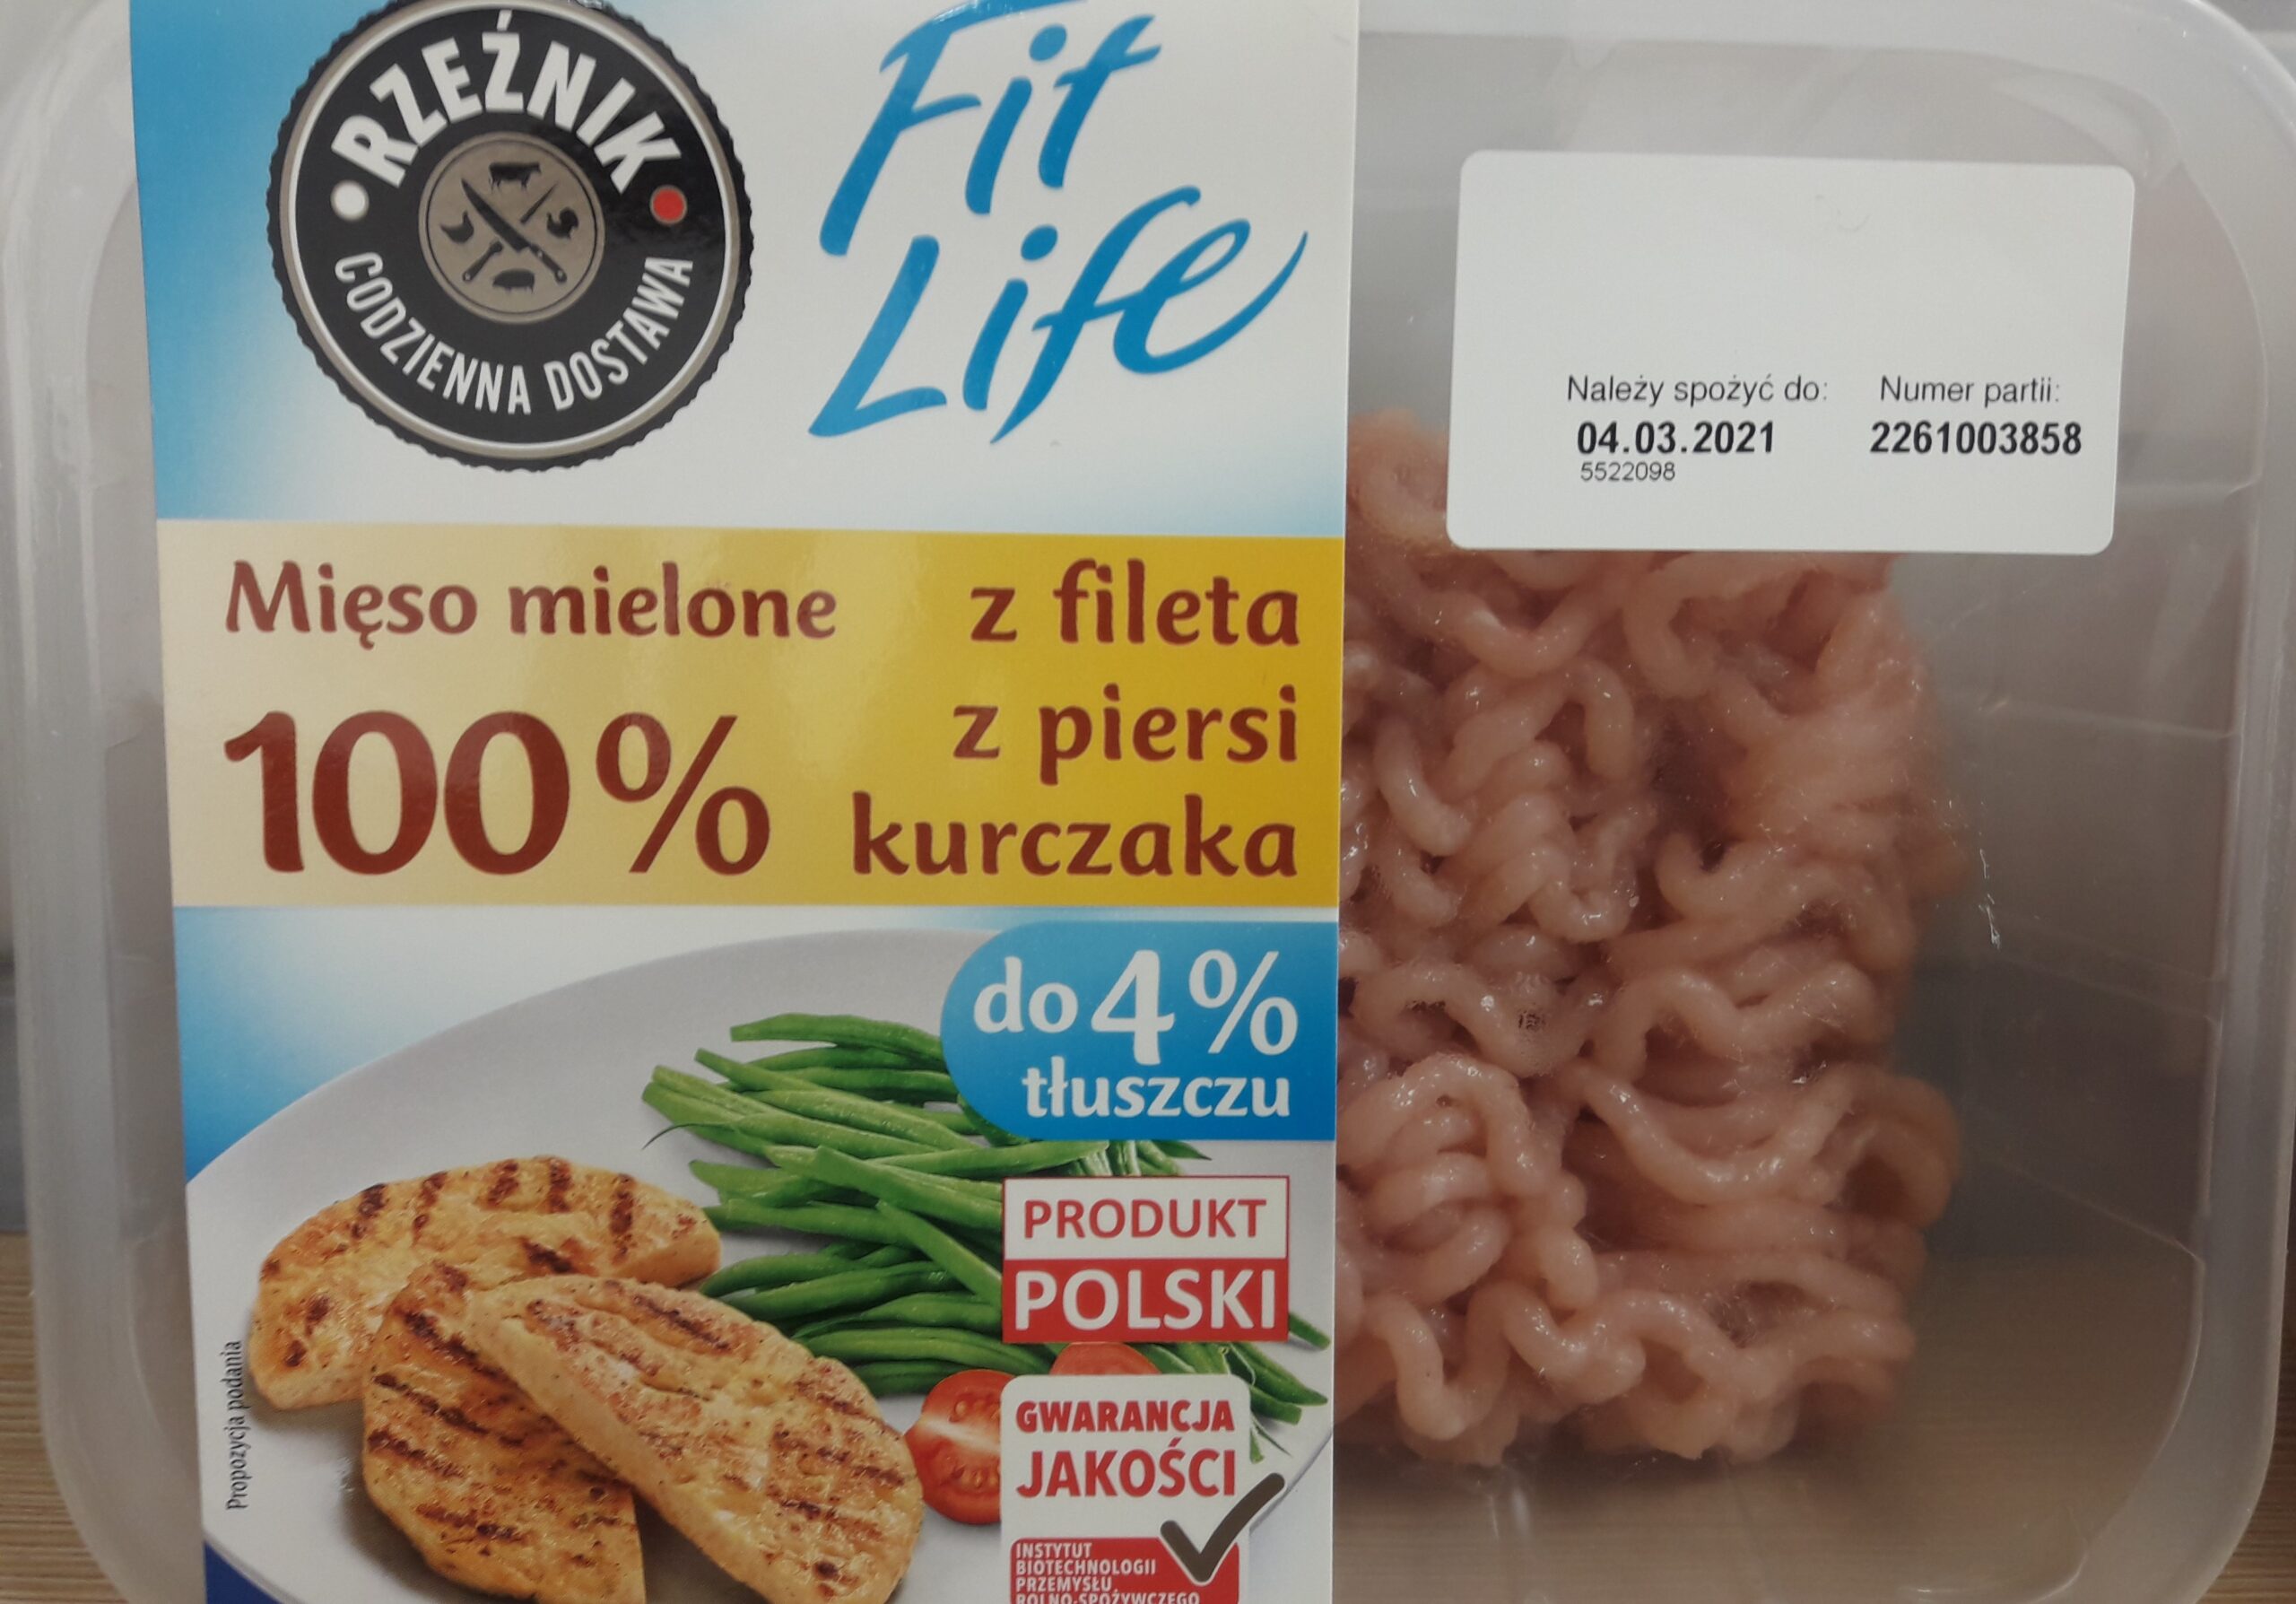 Wykryto salmonellę w mięsie z kurczaka z Biedronki i Lidla